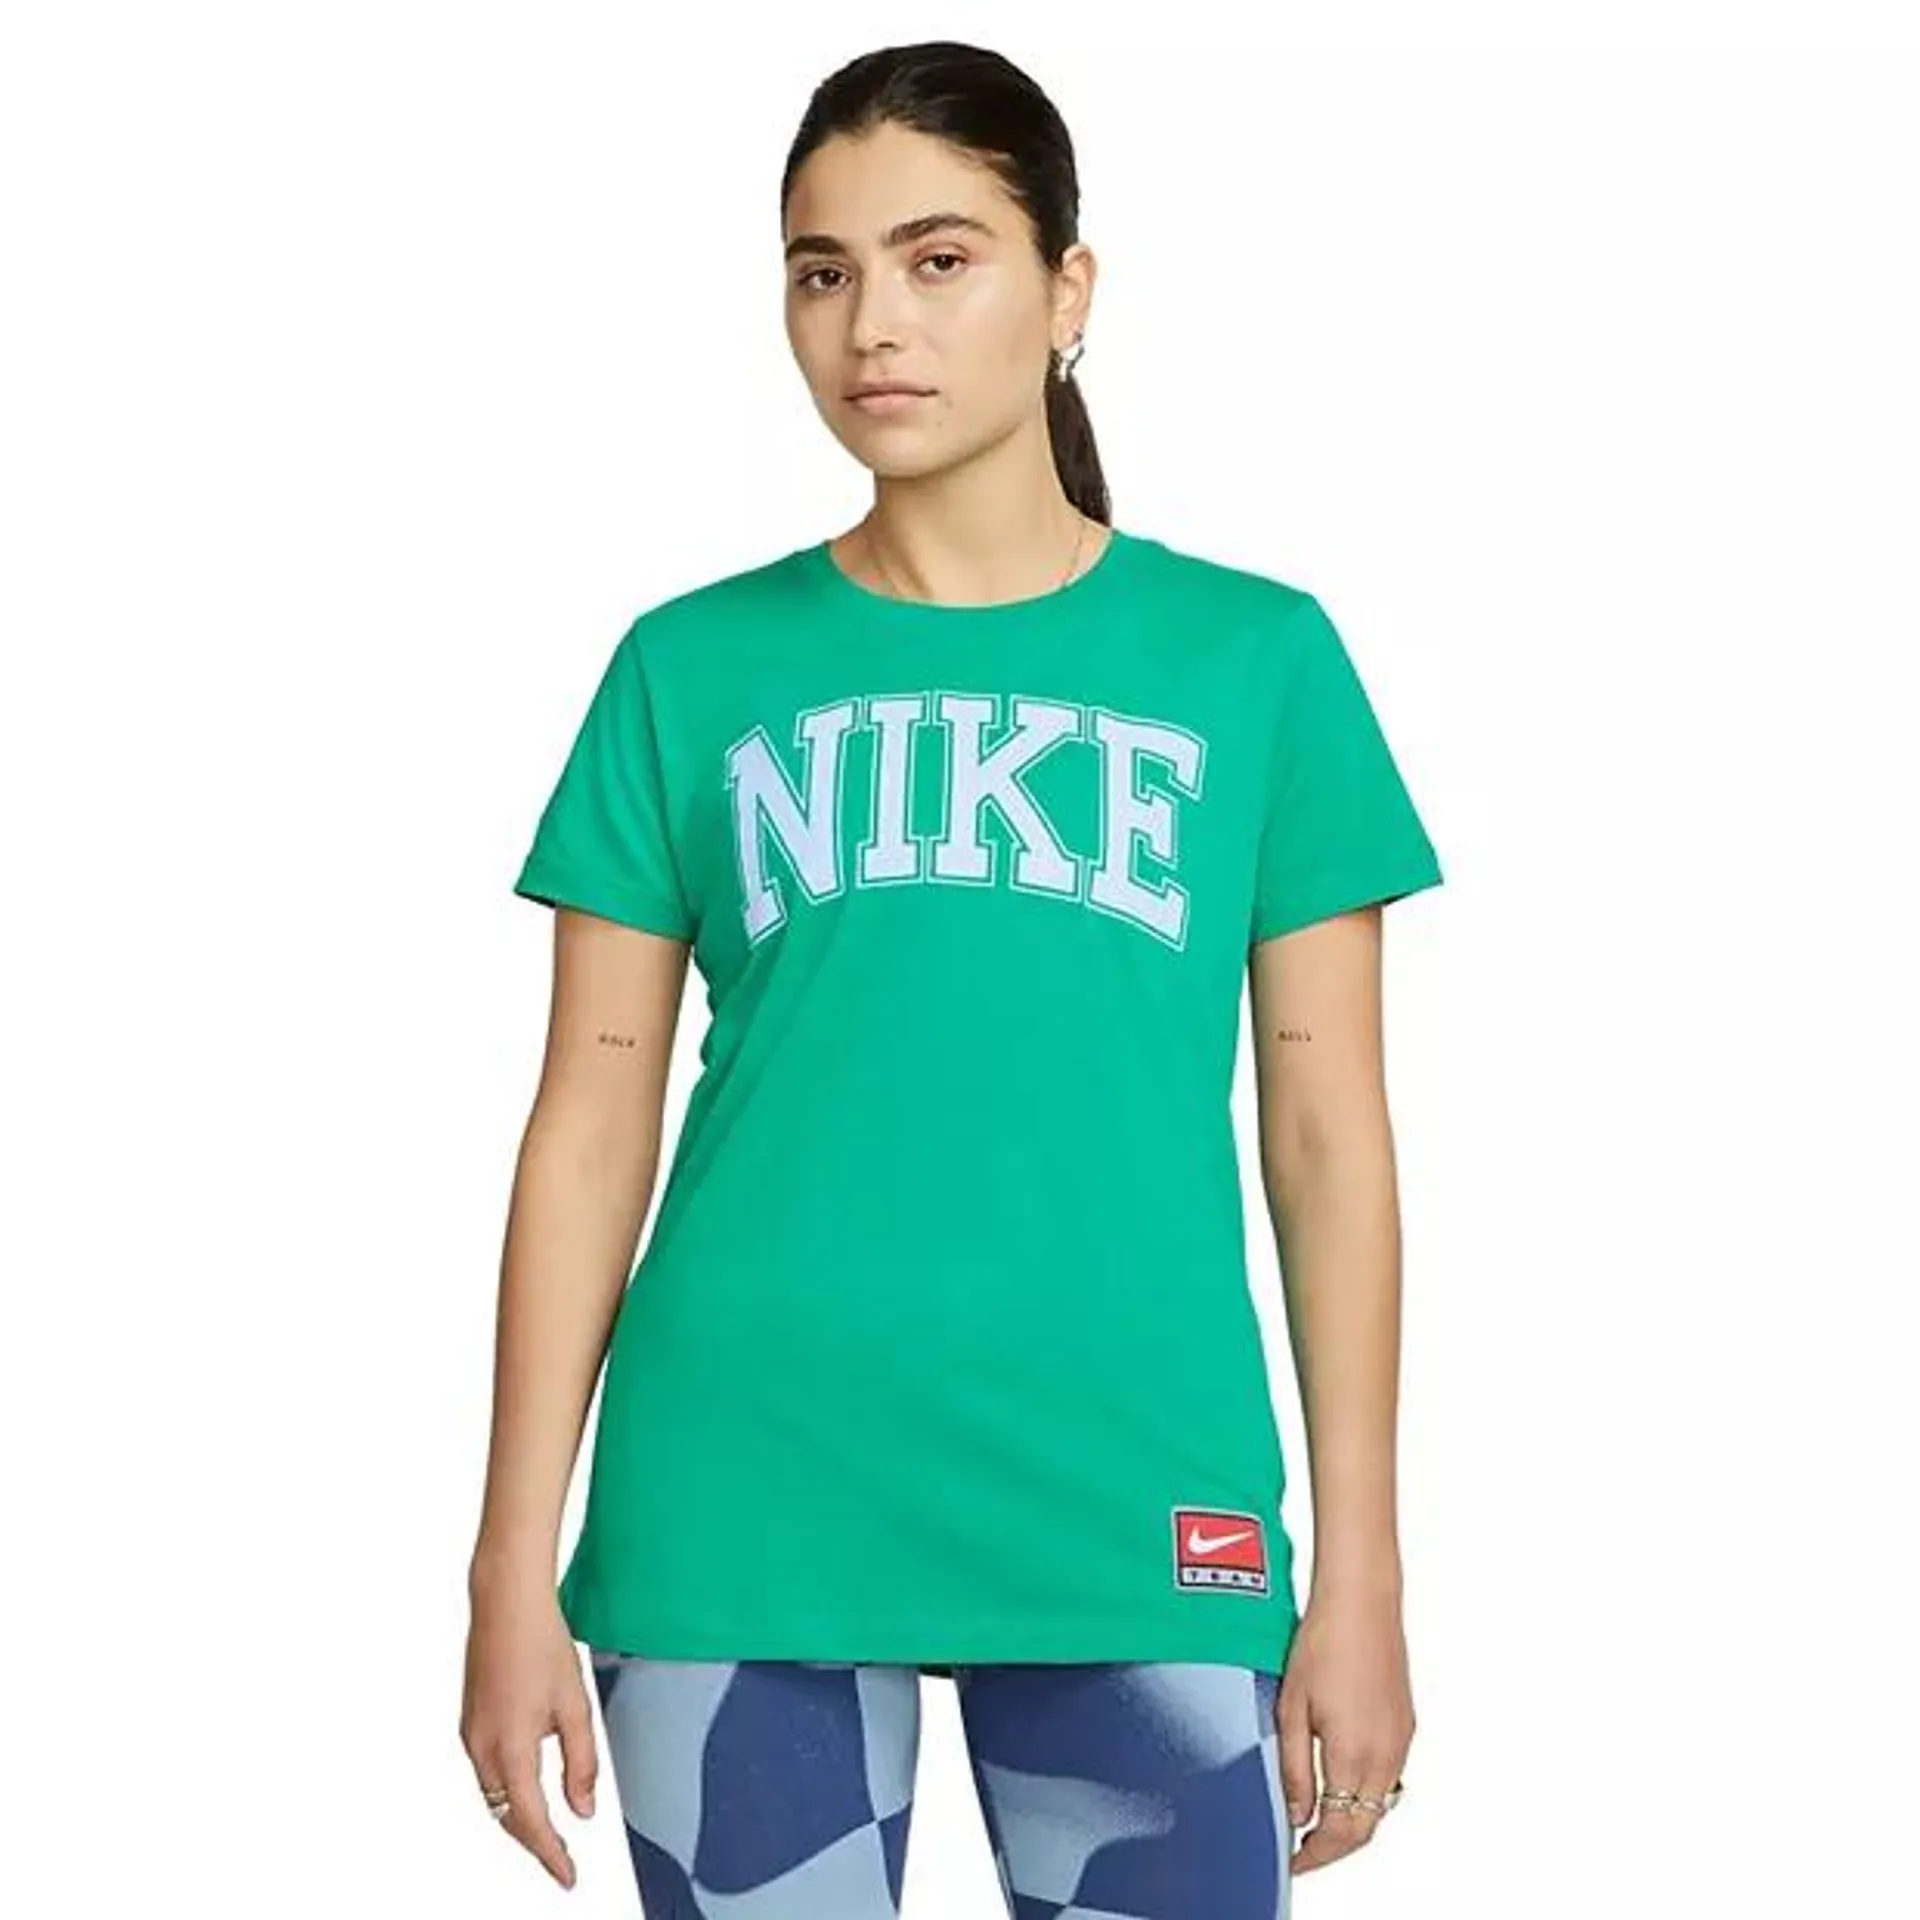 Women's Nike Sportswear Graphic Tee